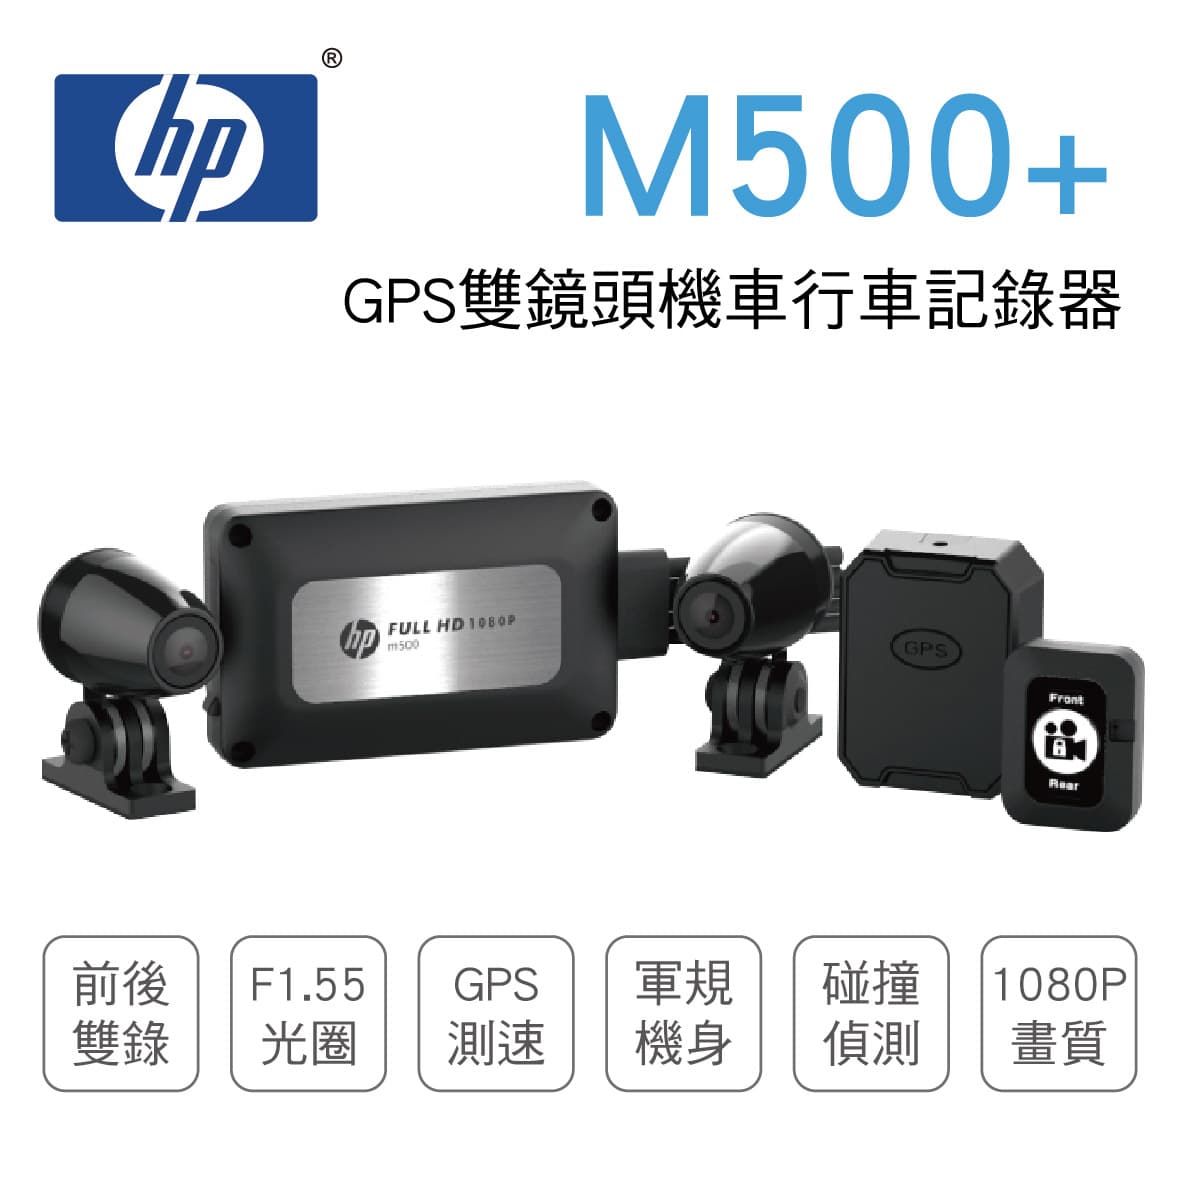 真便宜 [預購]HP惠普 M500+ GPS雙鏡頭機車行車記錄器